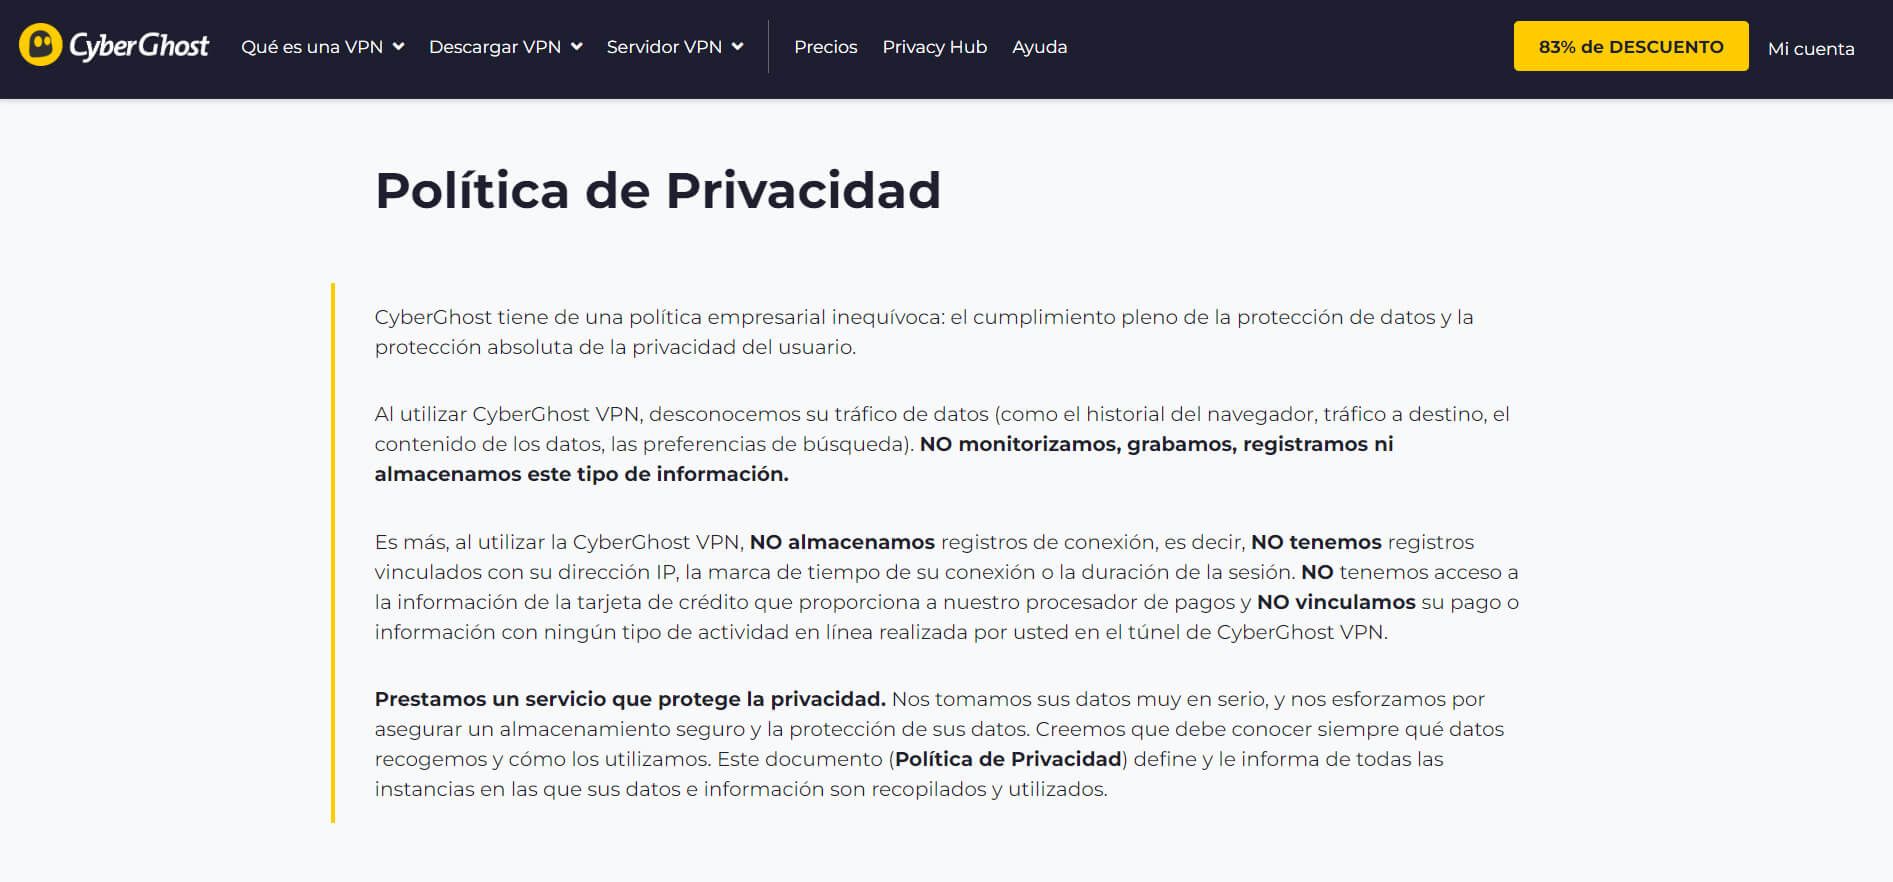 Política de Privacidad de CyberGhost VPN